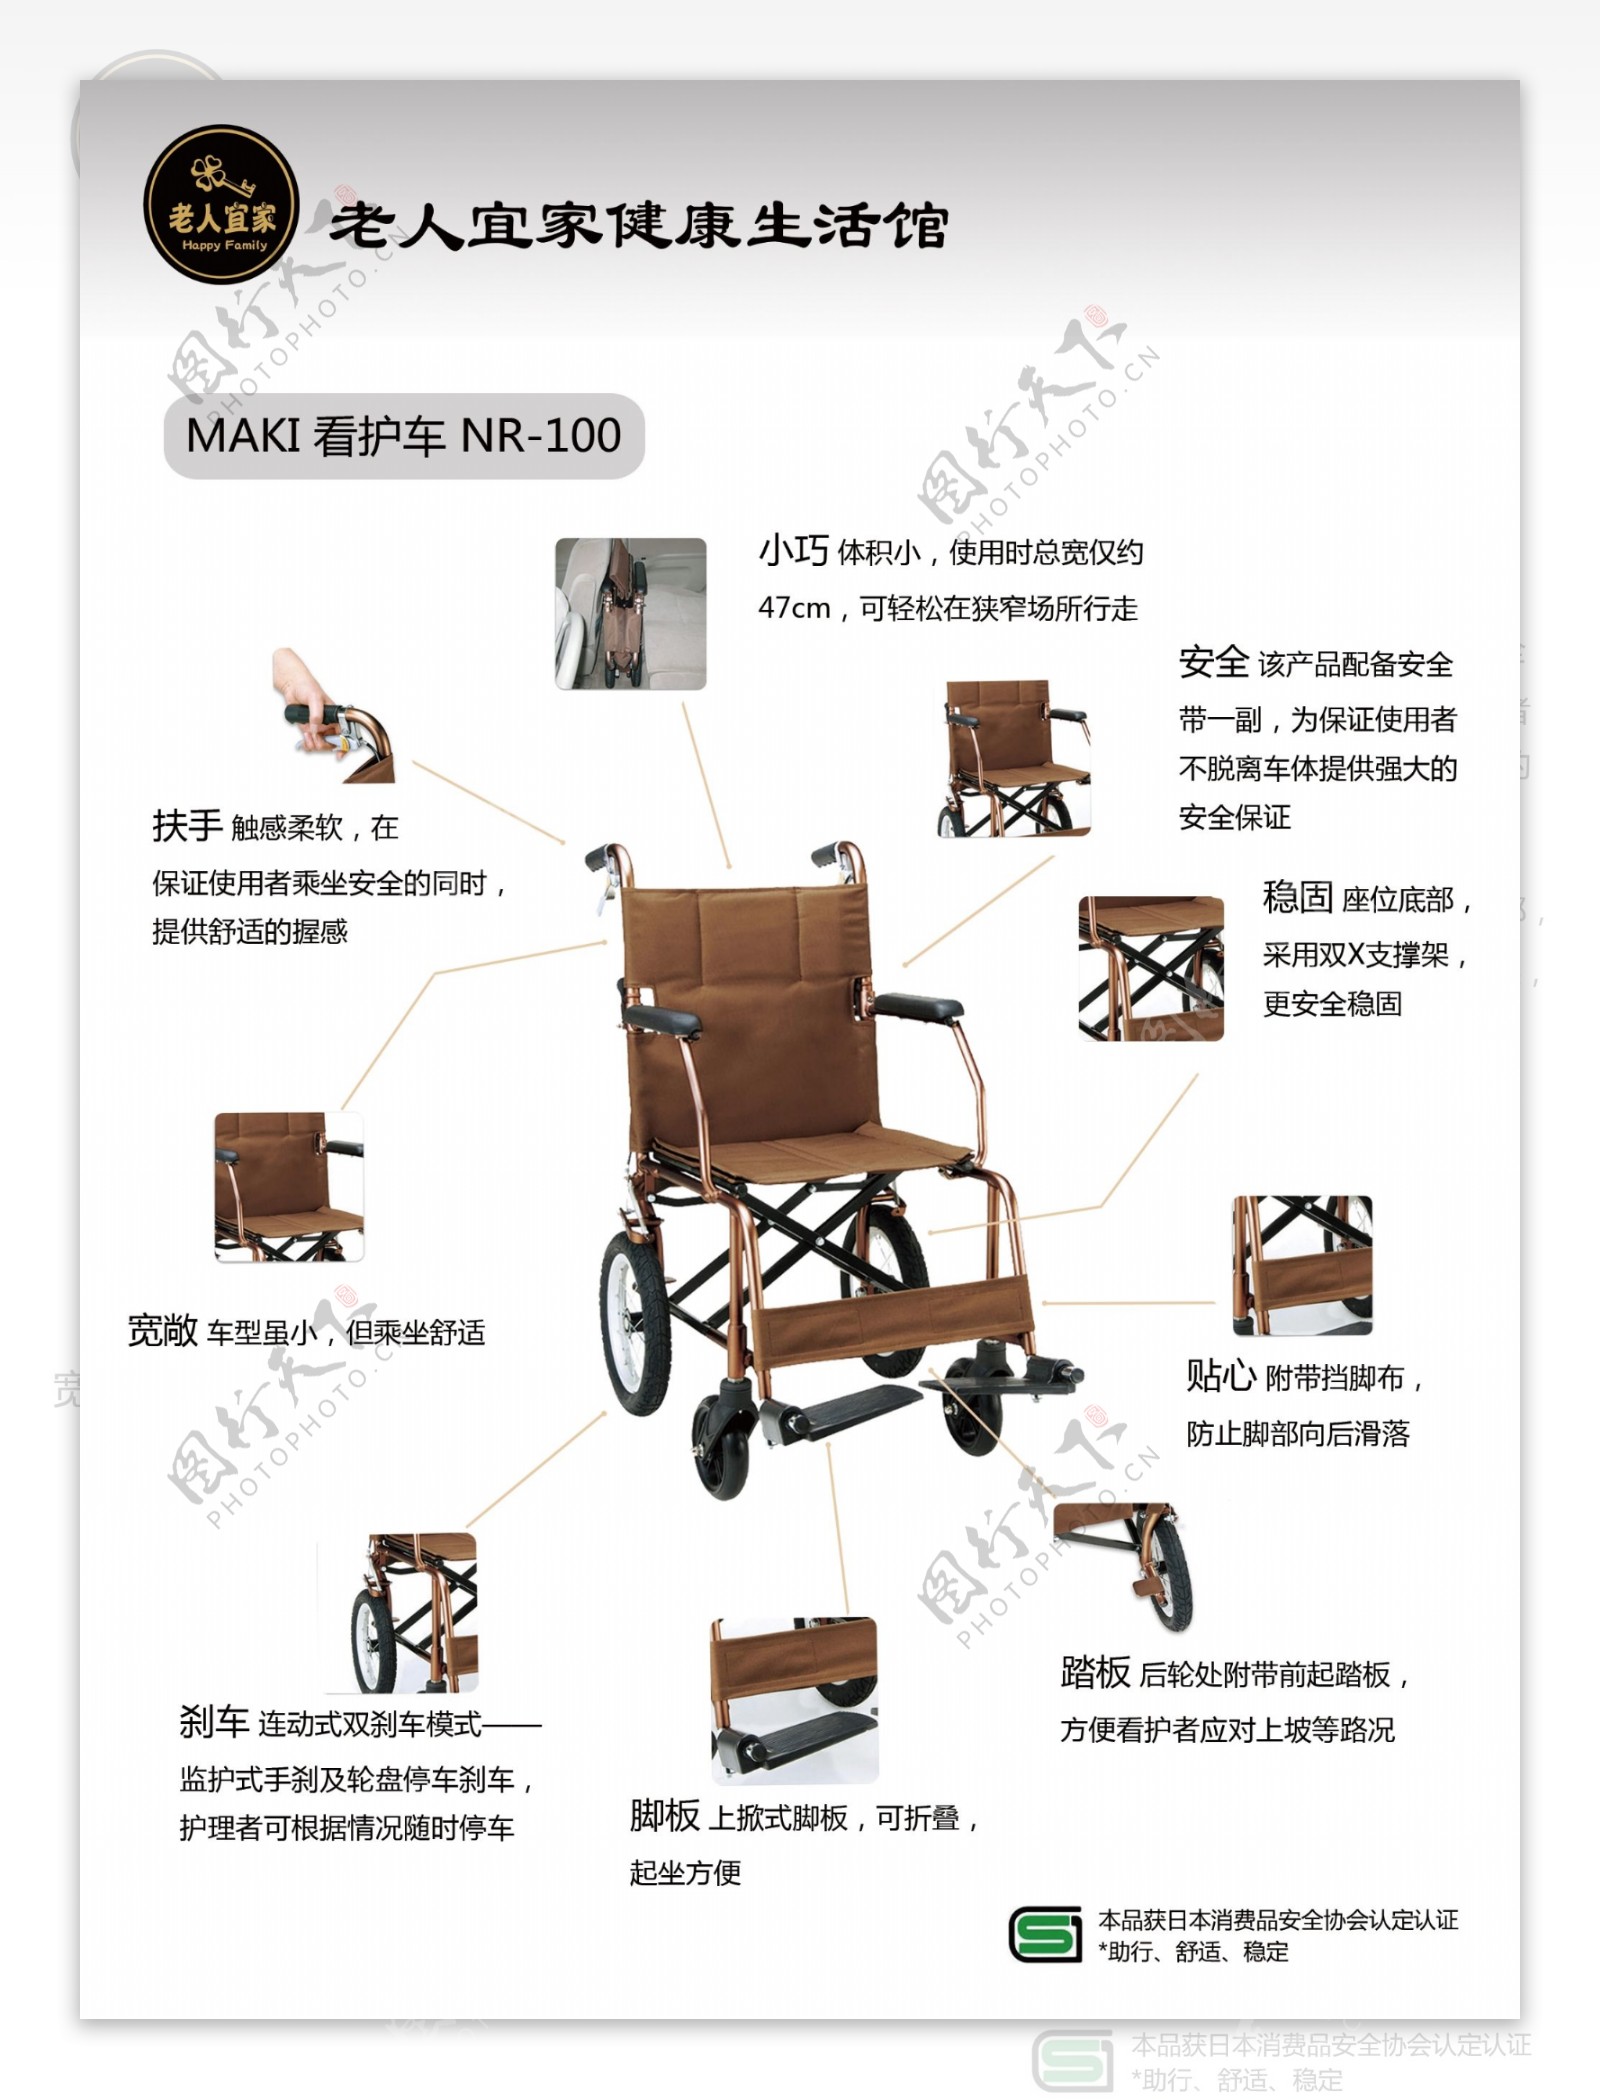 轮椅功能说明